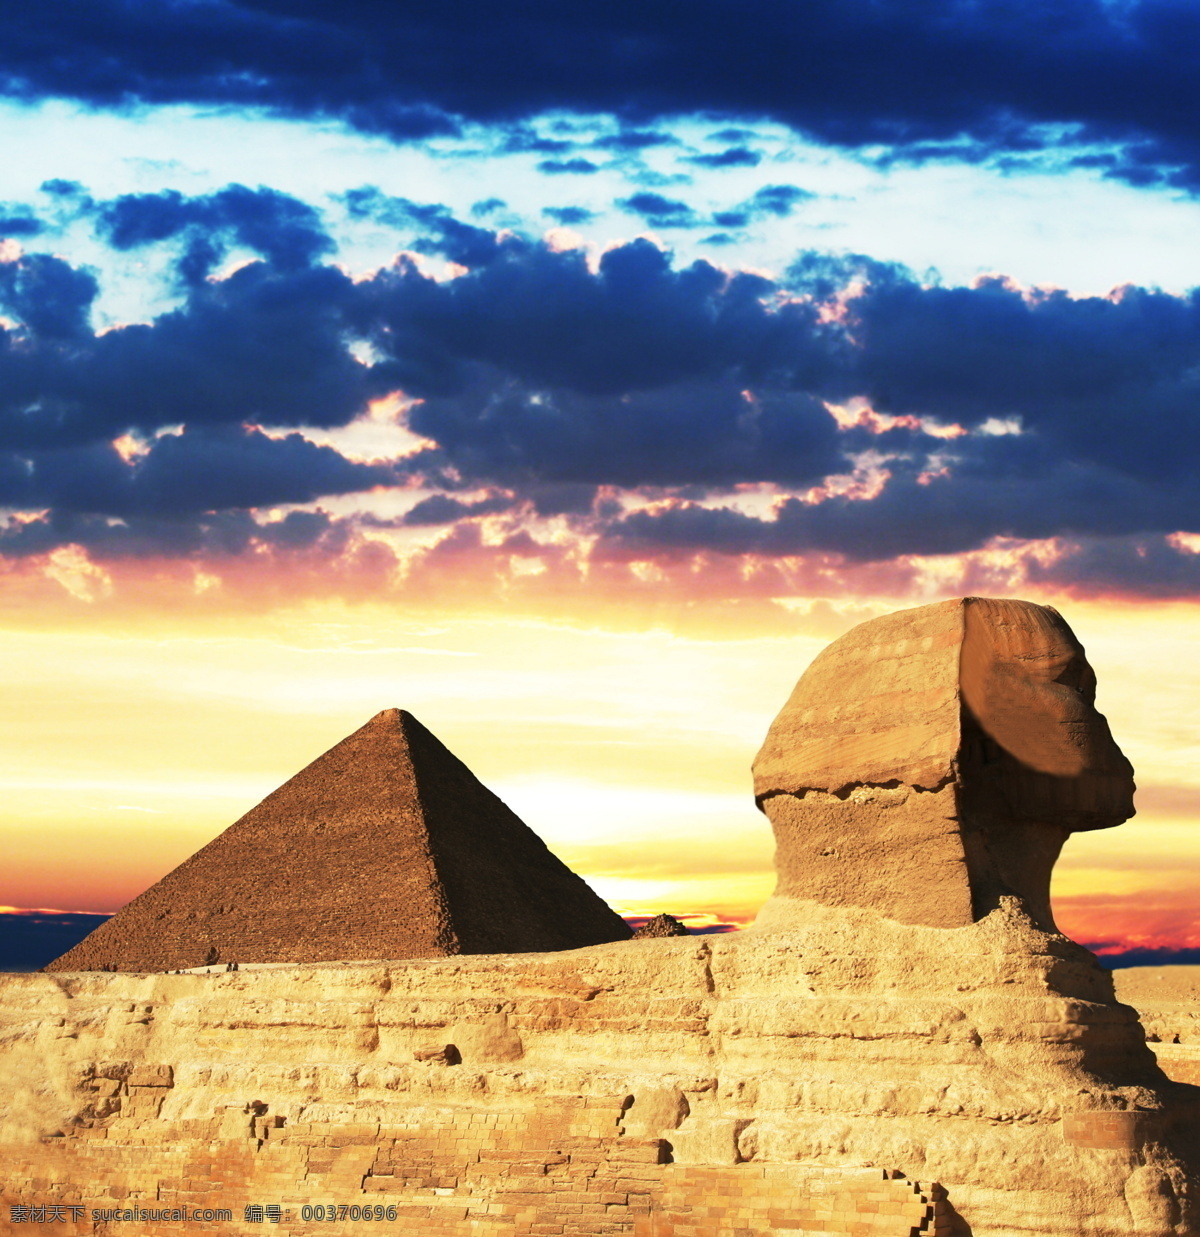 埃及金字塔 埃及 非洲 旅游 旅游摄影 国外 国外旅游 金字塔 古埃及 狮身人面 狮身人面像 法老 陵墓 景点 石头 风景 名胜古迹 自然景观 黄色